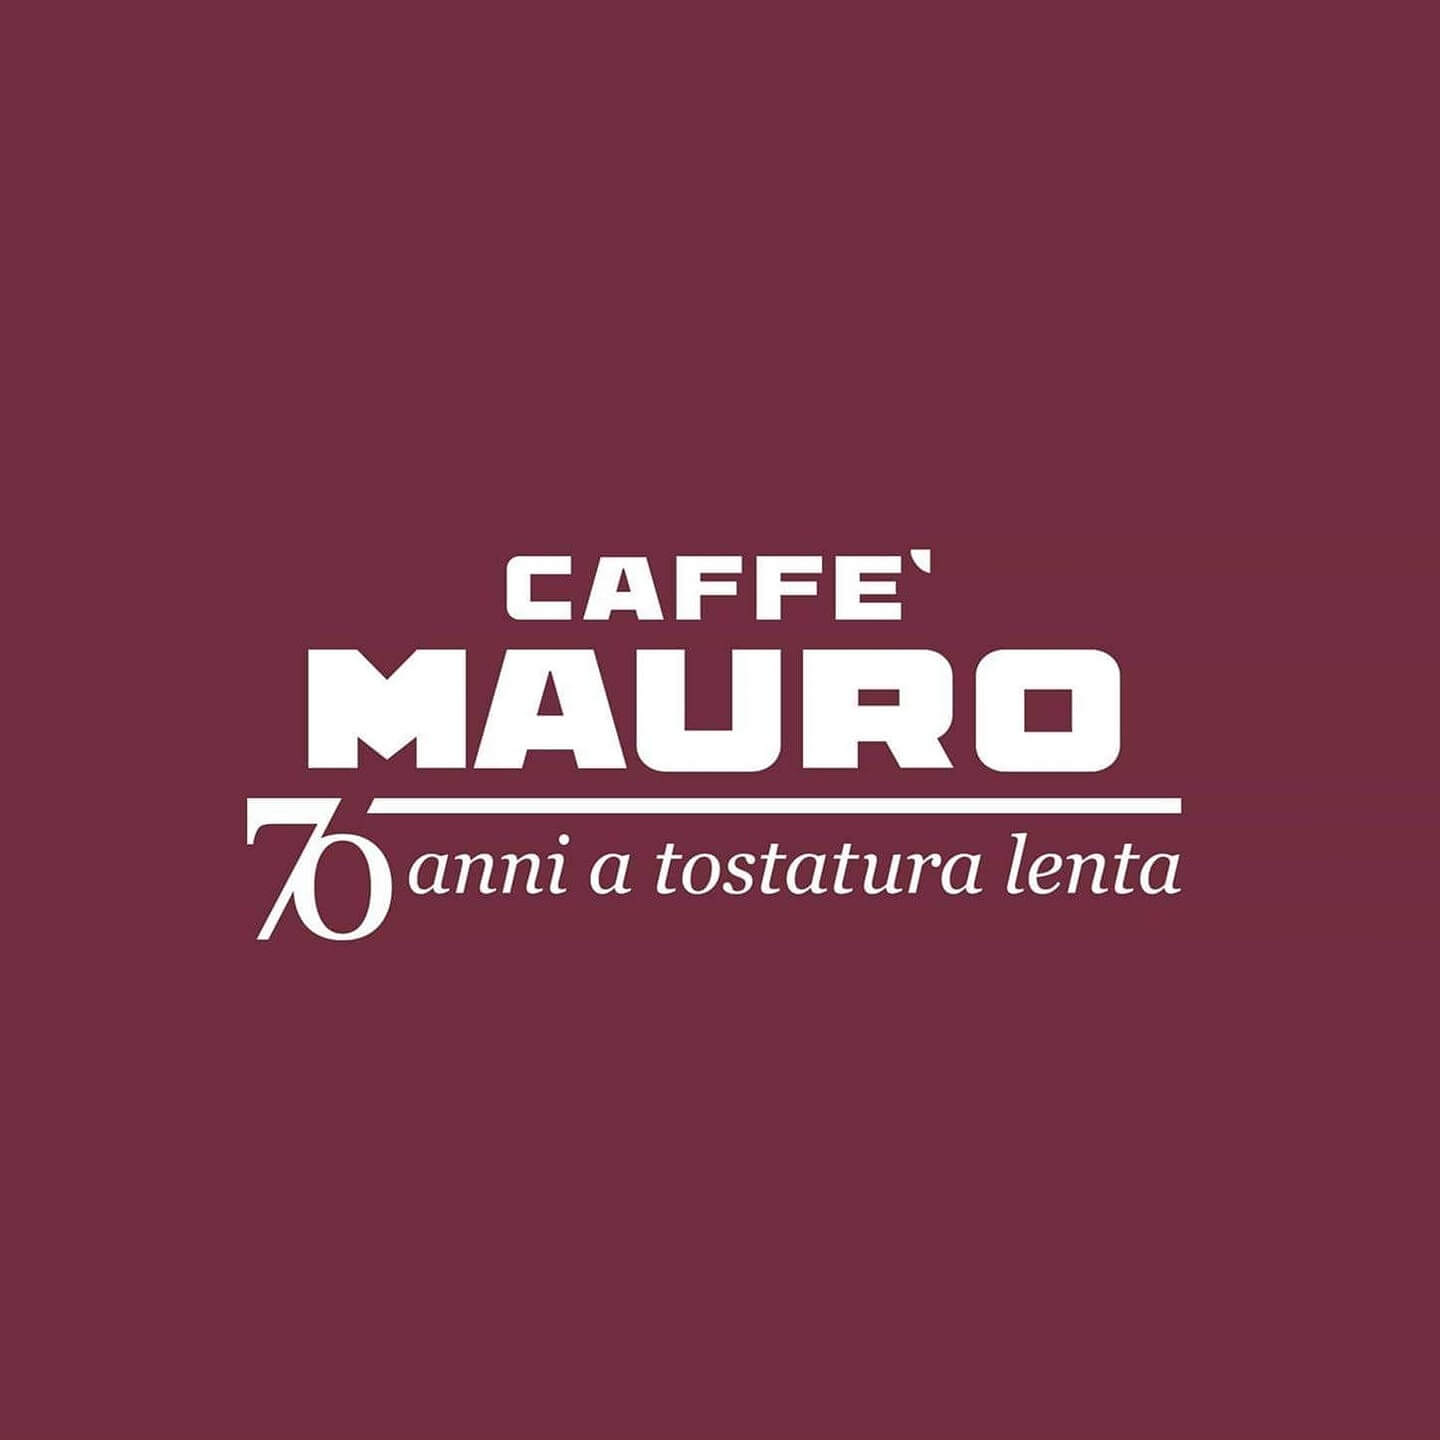 Caffe Mauro